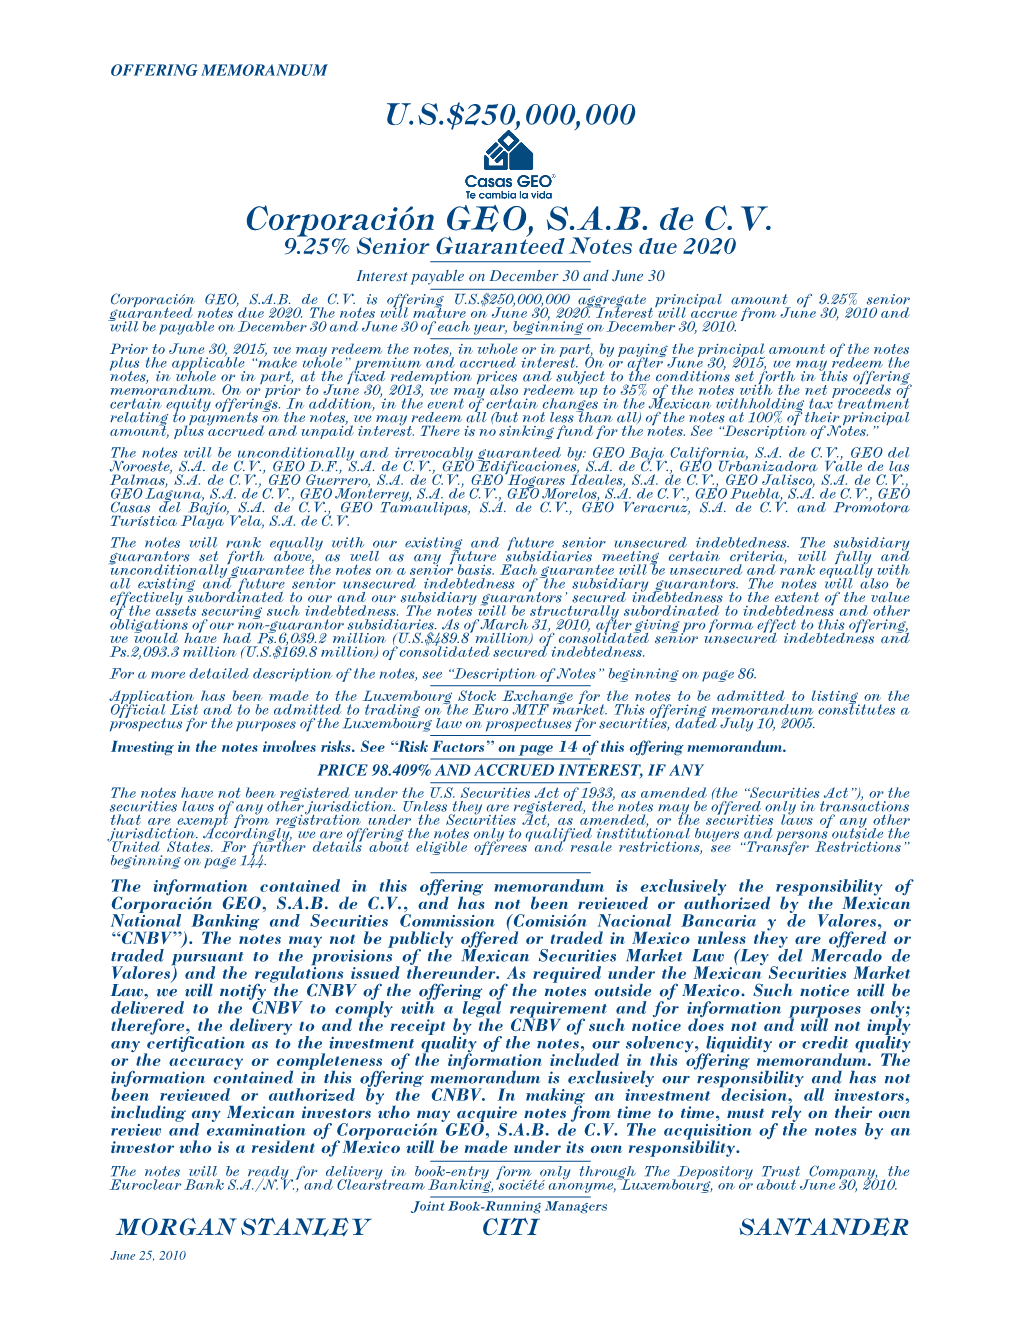 Corporación GEO, S.A.B. De C.V. 9.25% Senior Guaranteed Notes Due 2020 Interest Payable on December 30 and June 30 Corporación GEO, S.A.B